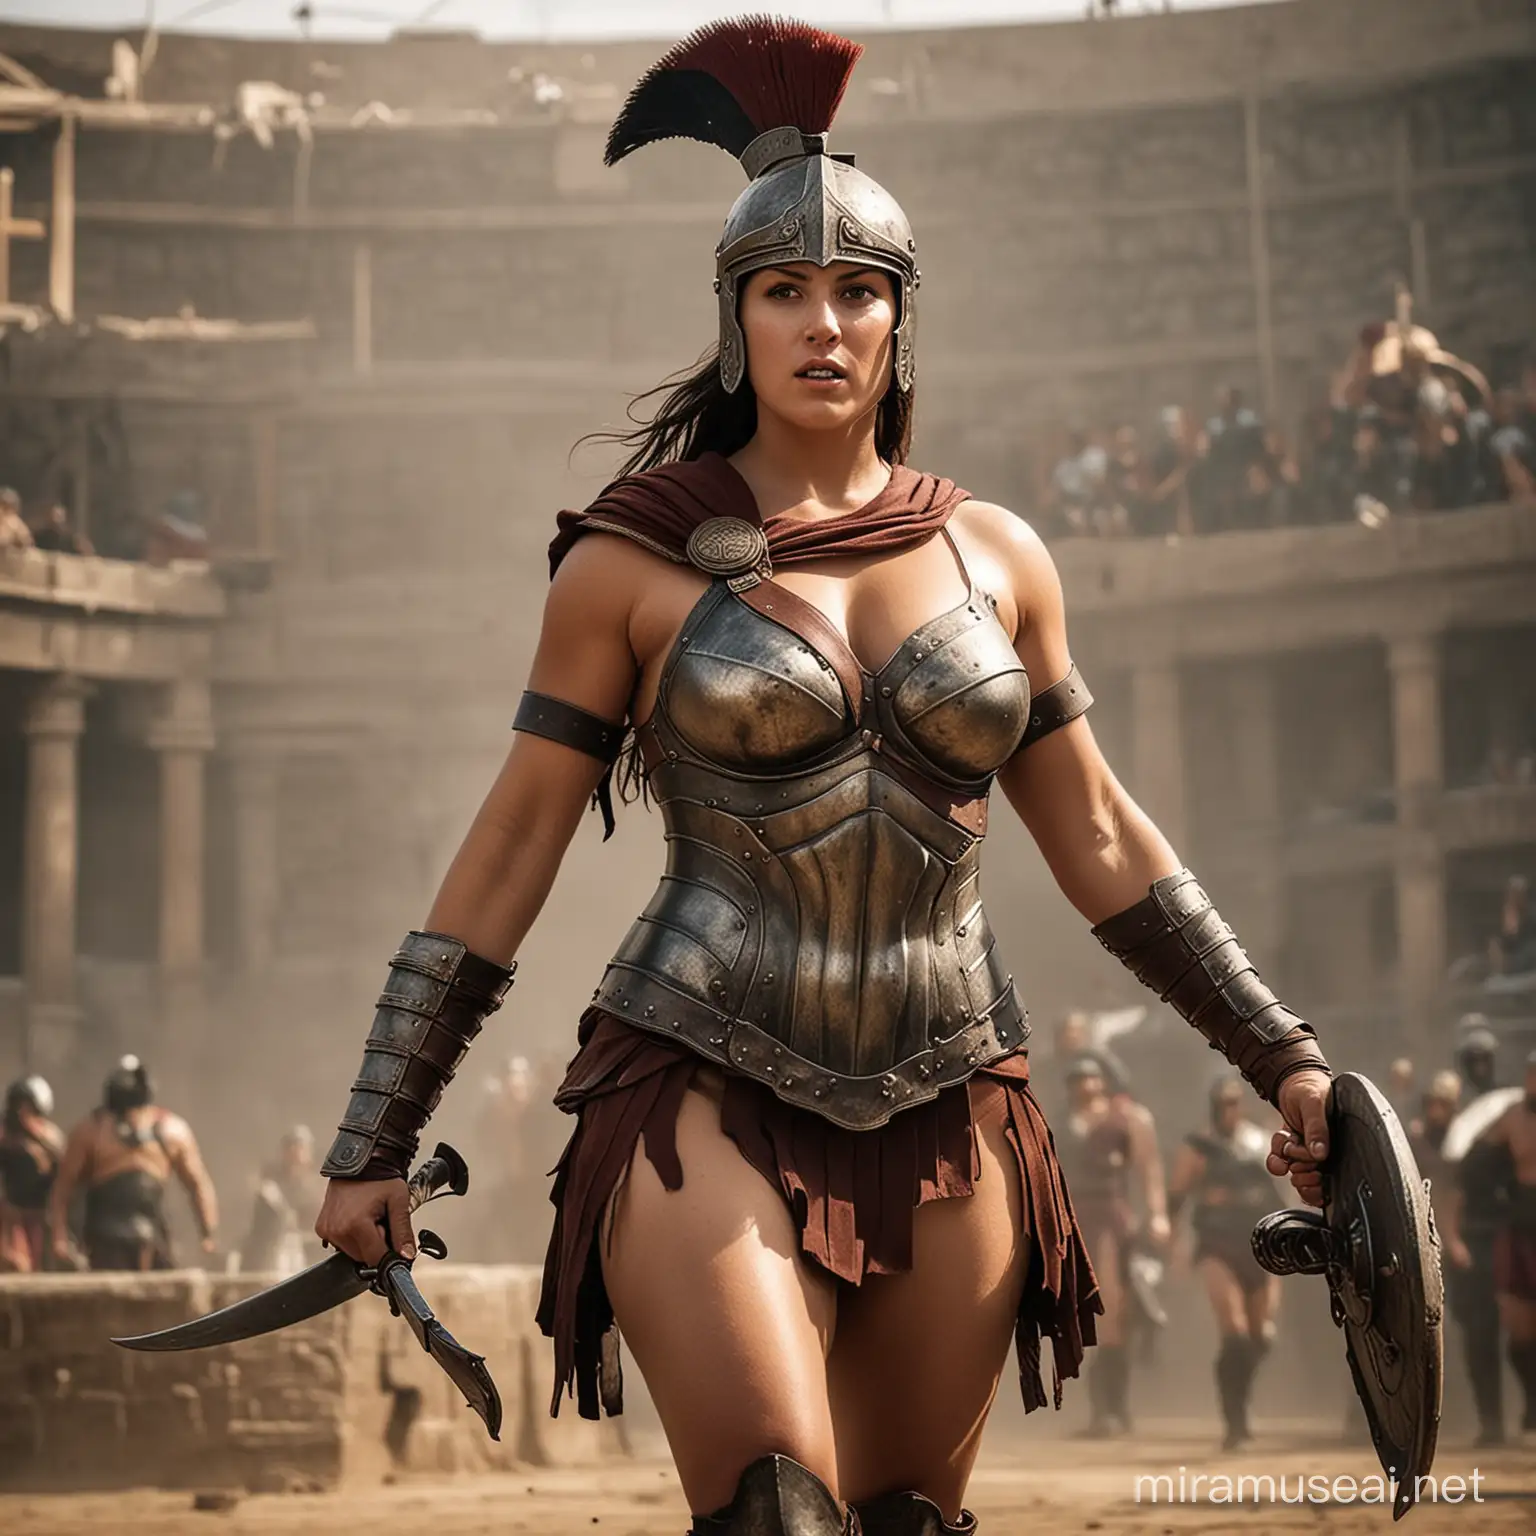 Seorang prajurit Spartan wanita montok yang berada di arena gladiator.